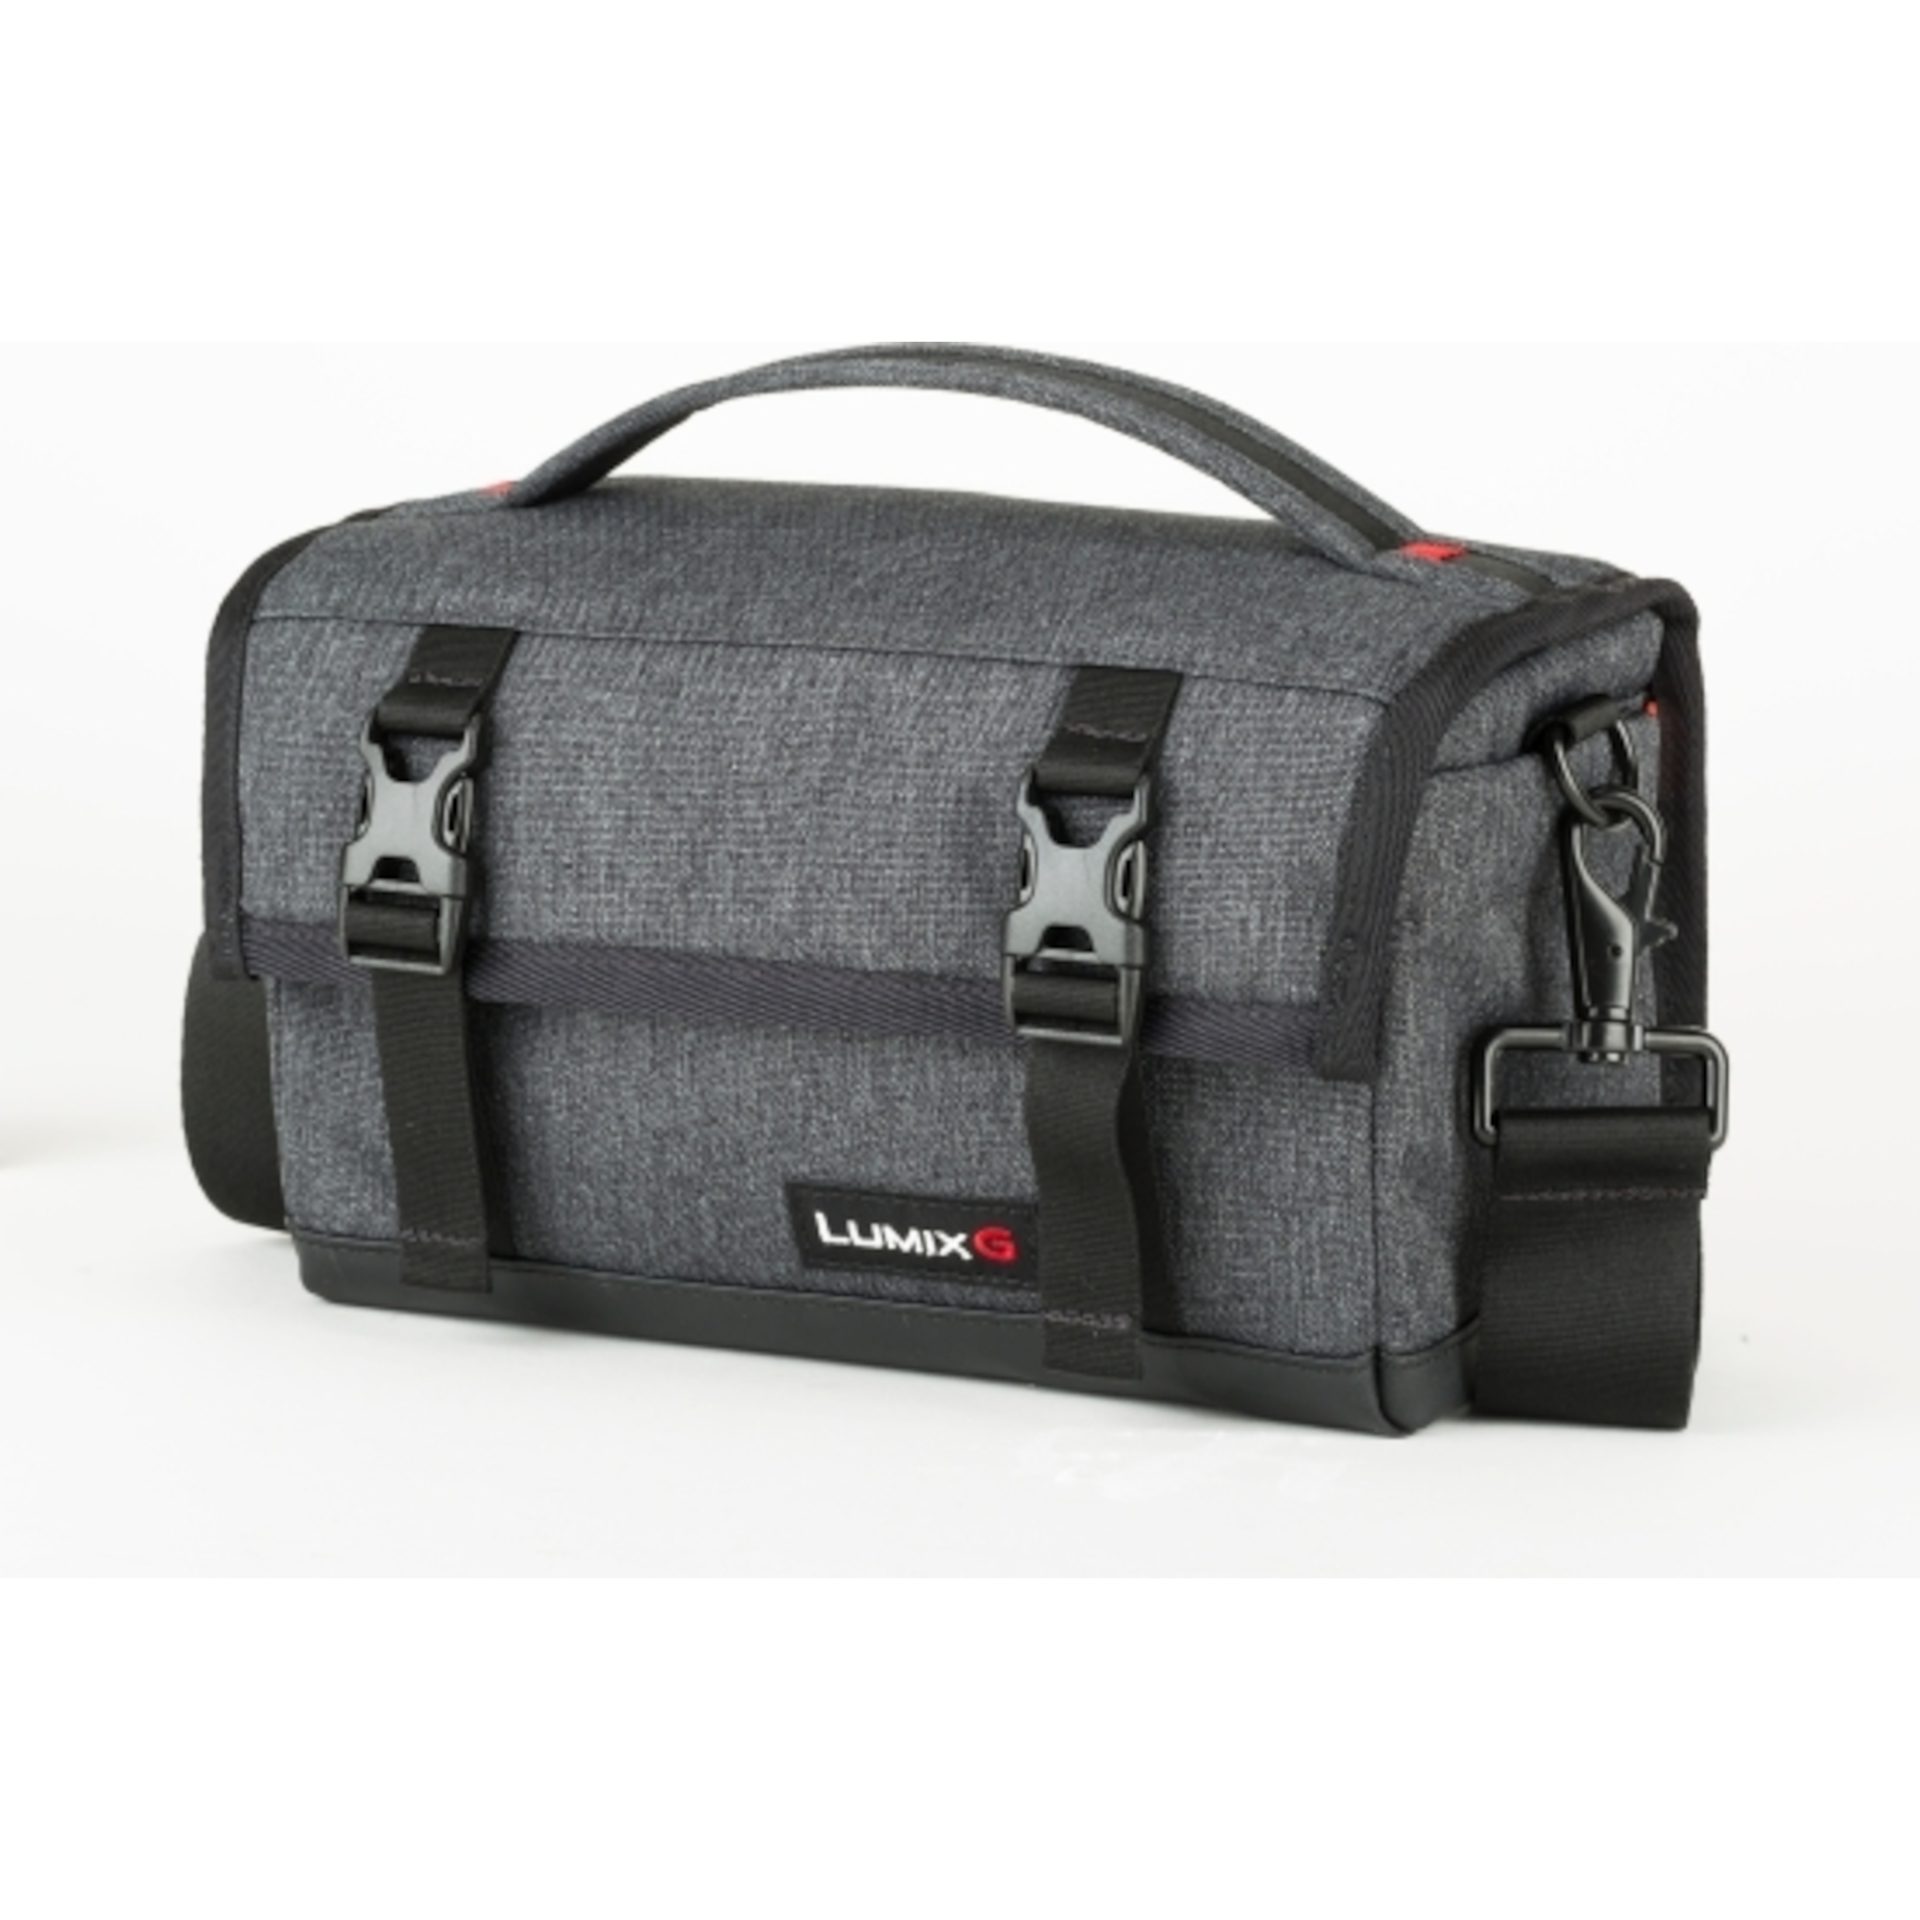 Panasonic DMW-PS10 malá taška na fotoaparát (ochranná klapka, kapsa na zip, včetně pláštěnky), šedá